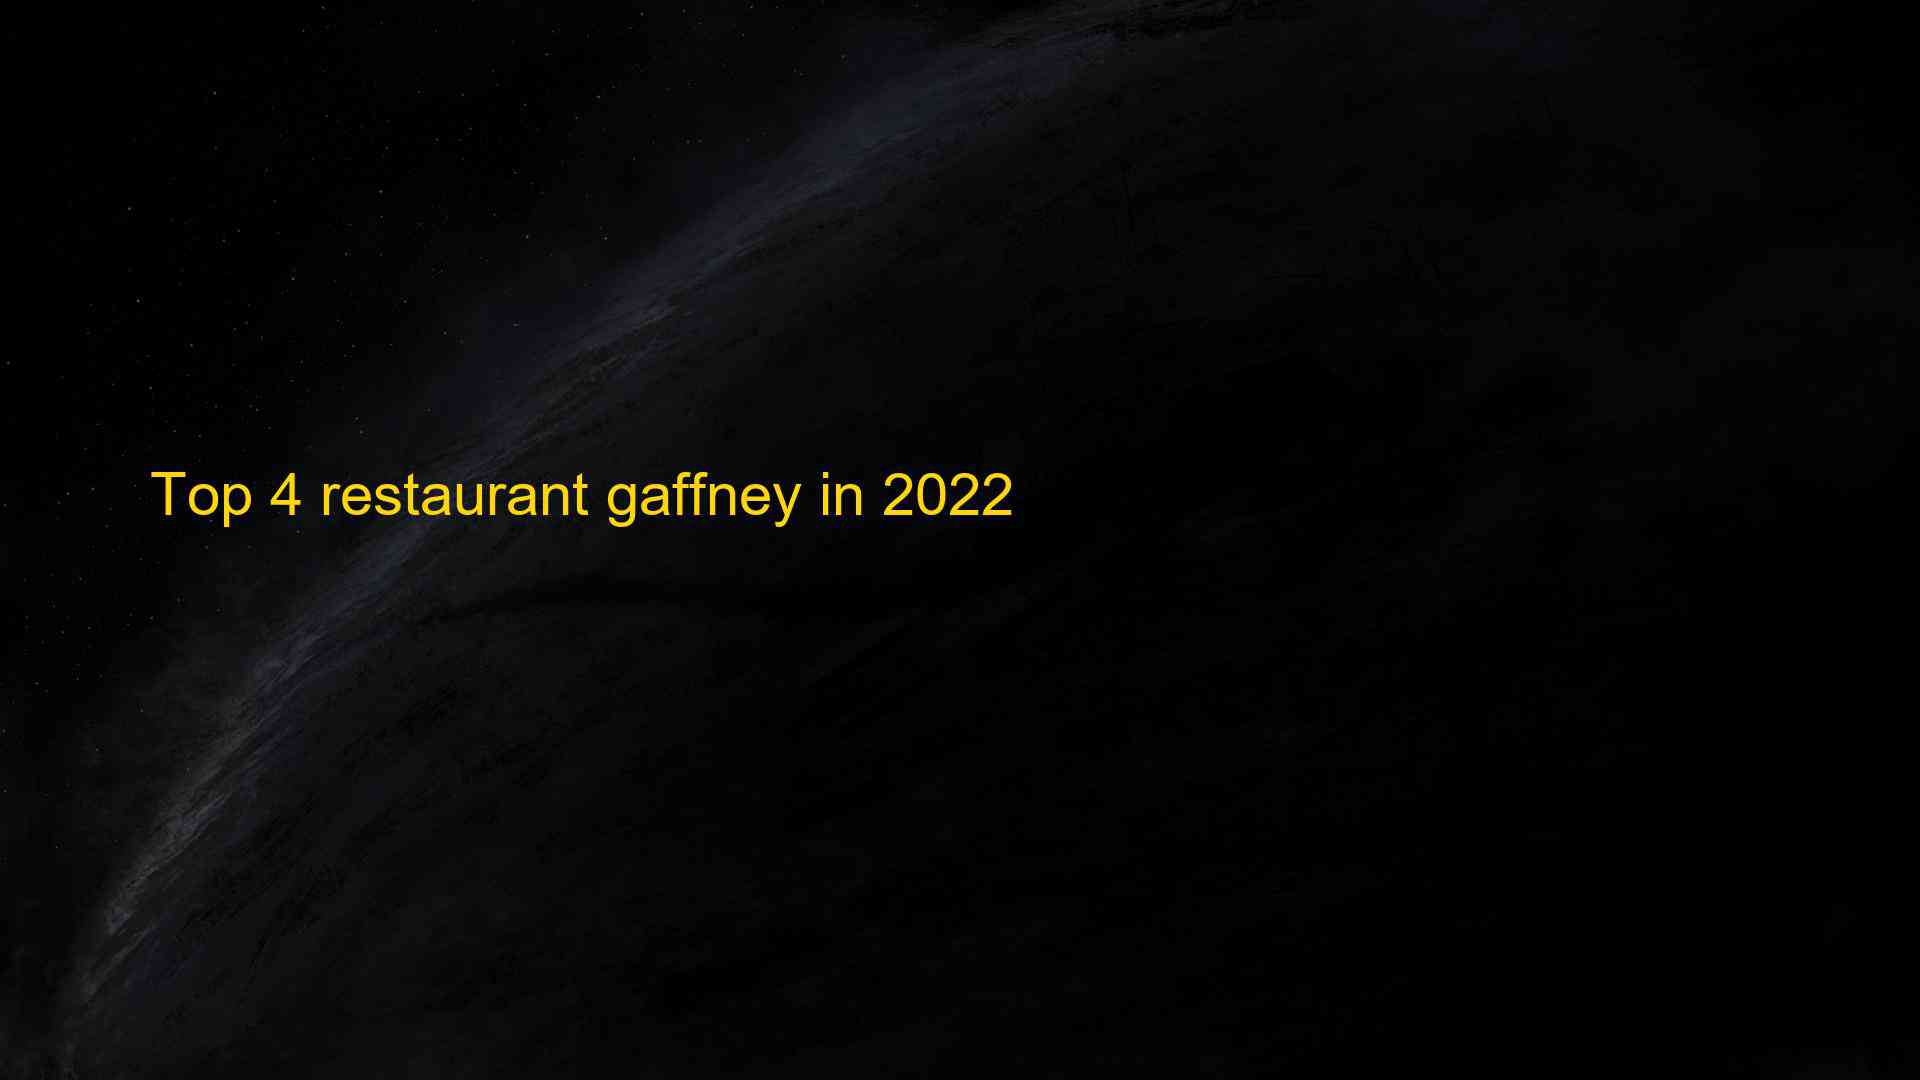 Top 4 restaurant gaffney in 2022 1663561491